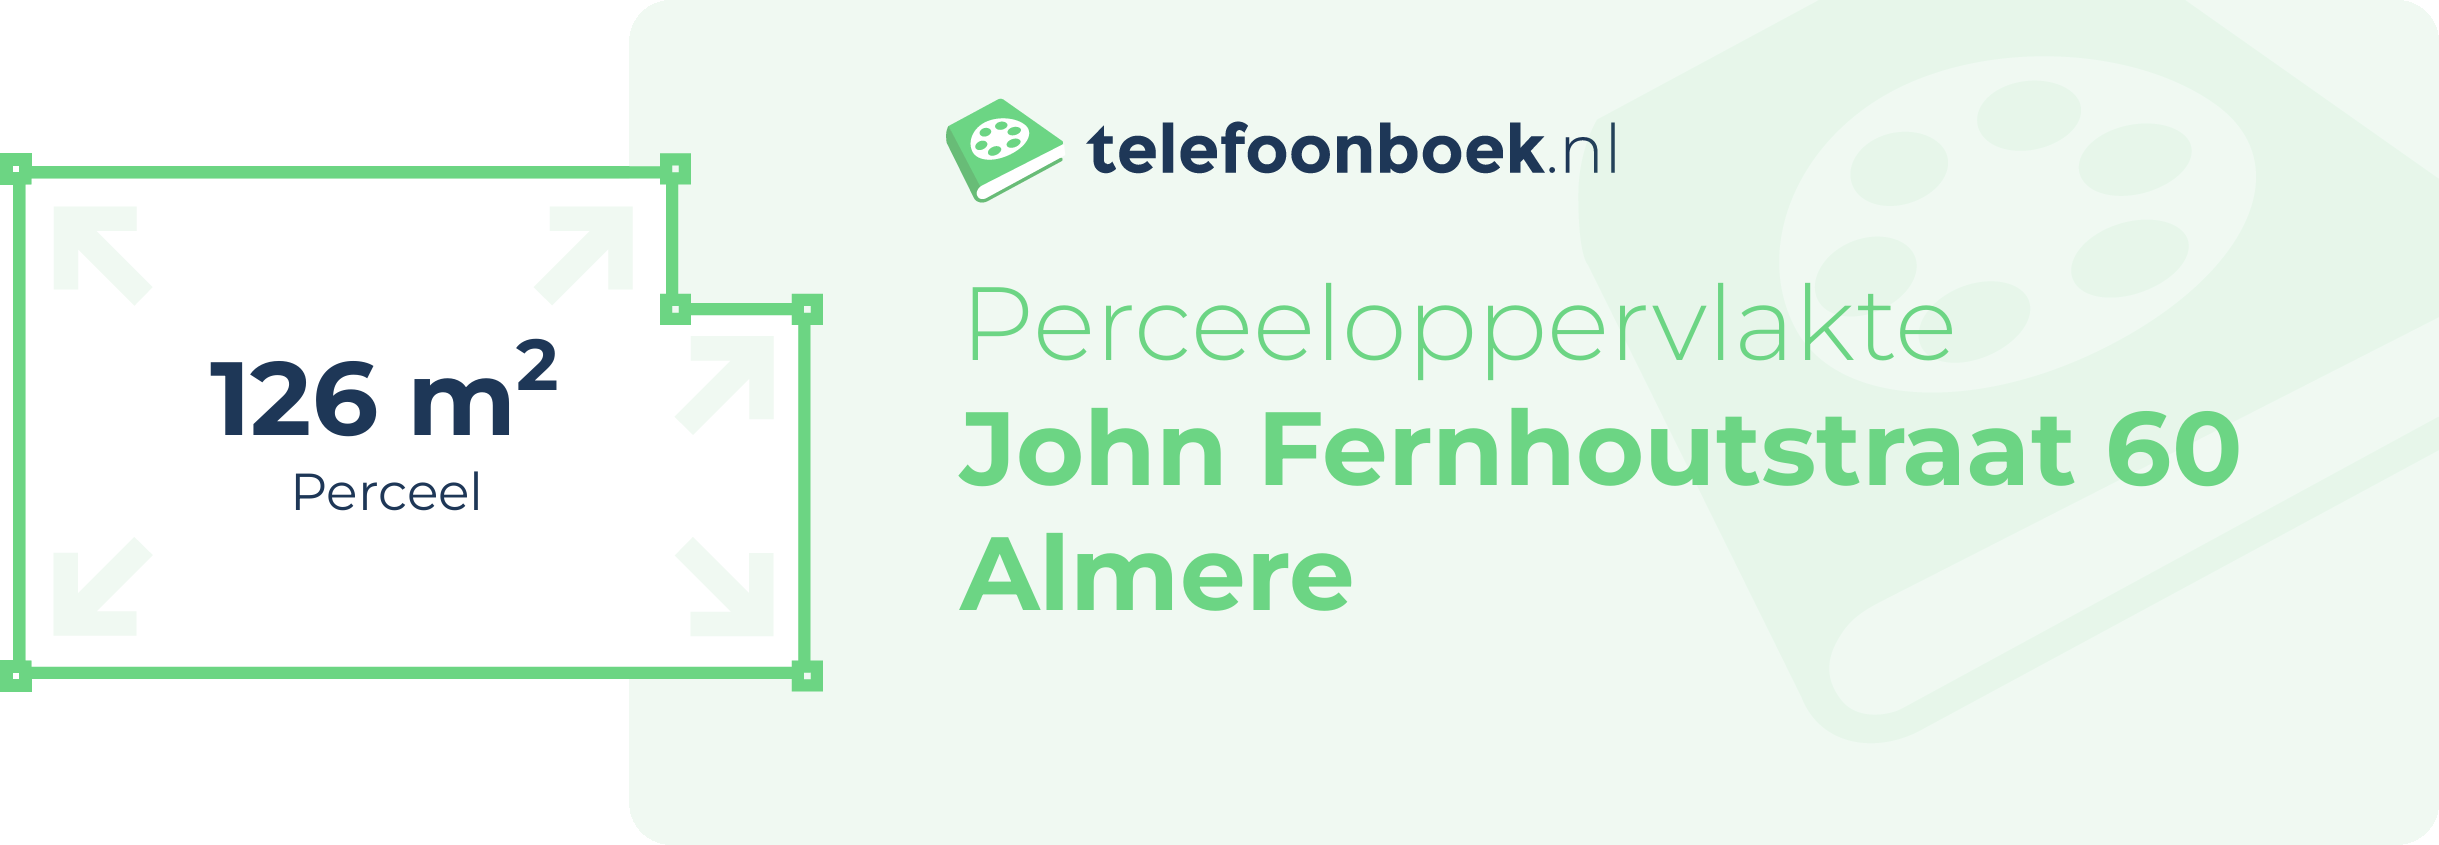 Perceeloppervlakte John Fernhoutstraat 60 Almere